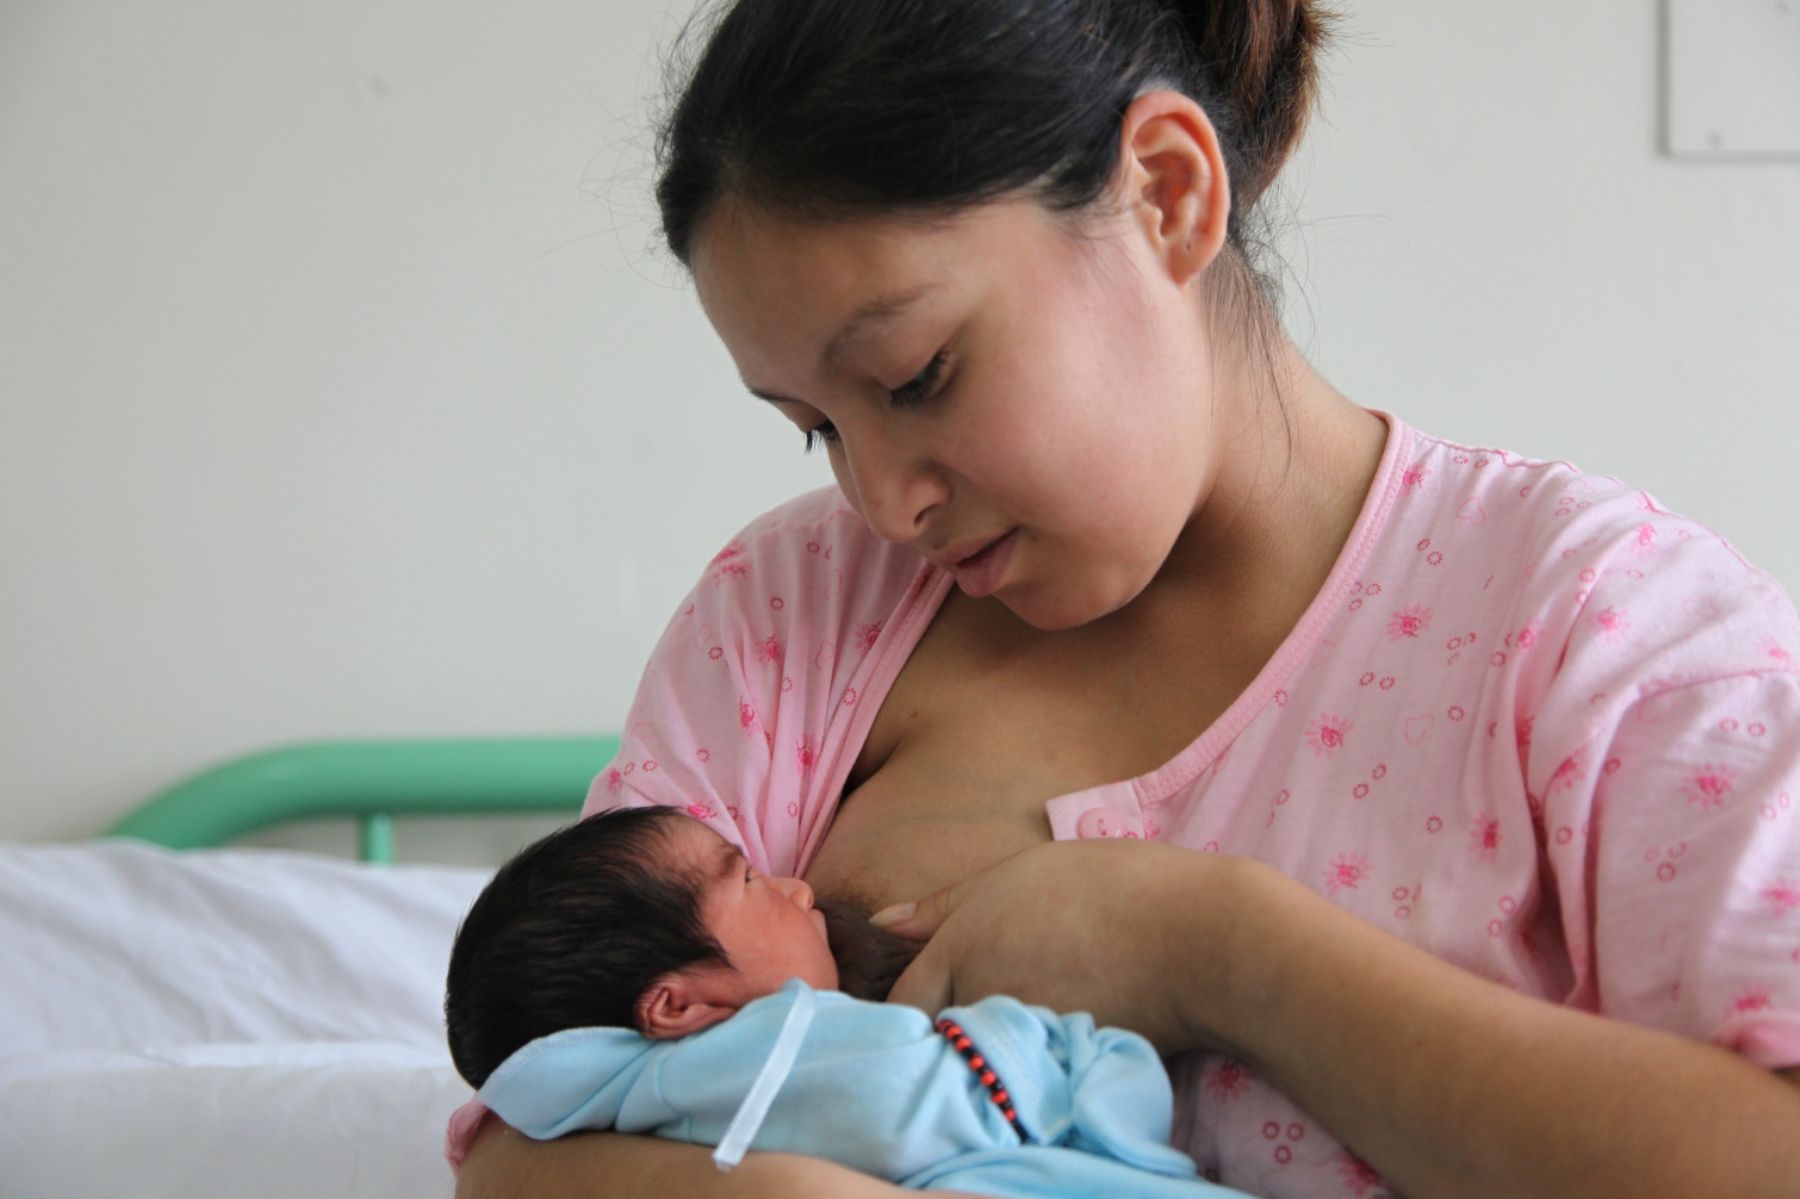 Lactancia materna: 4 riesgos de interrumpir la lactancia prematuramente